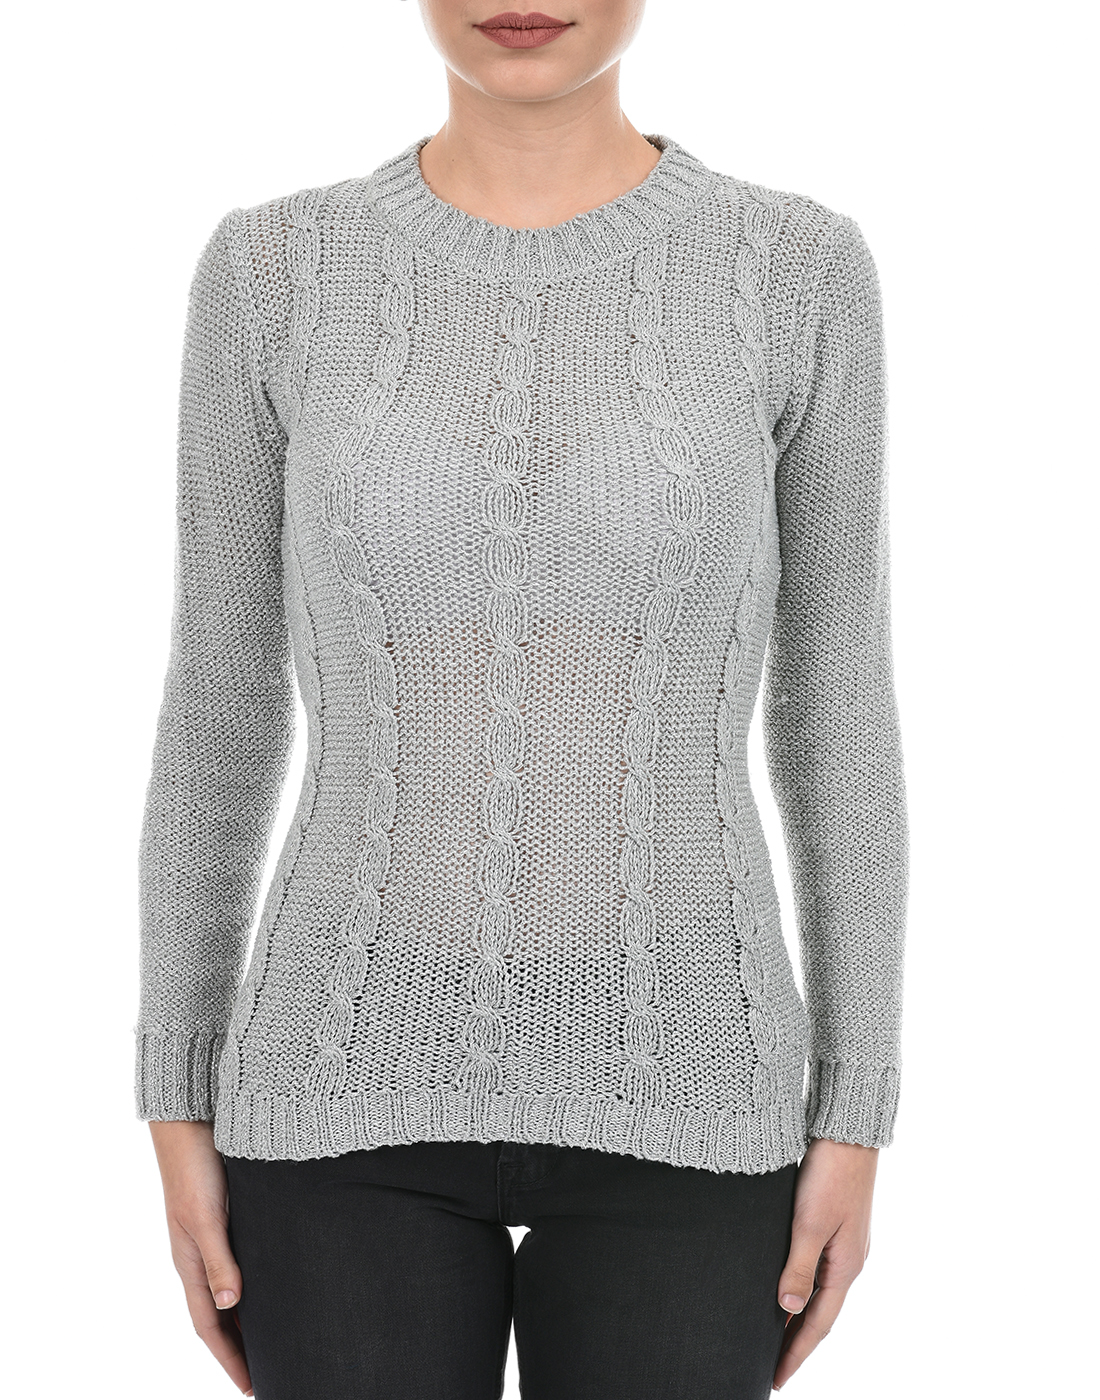 Species Women Grey Self Design Sweater